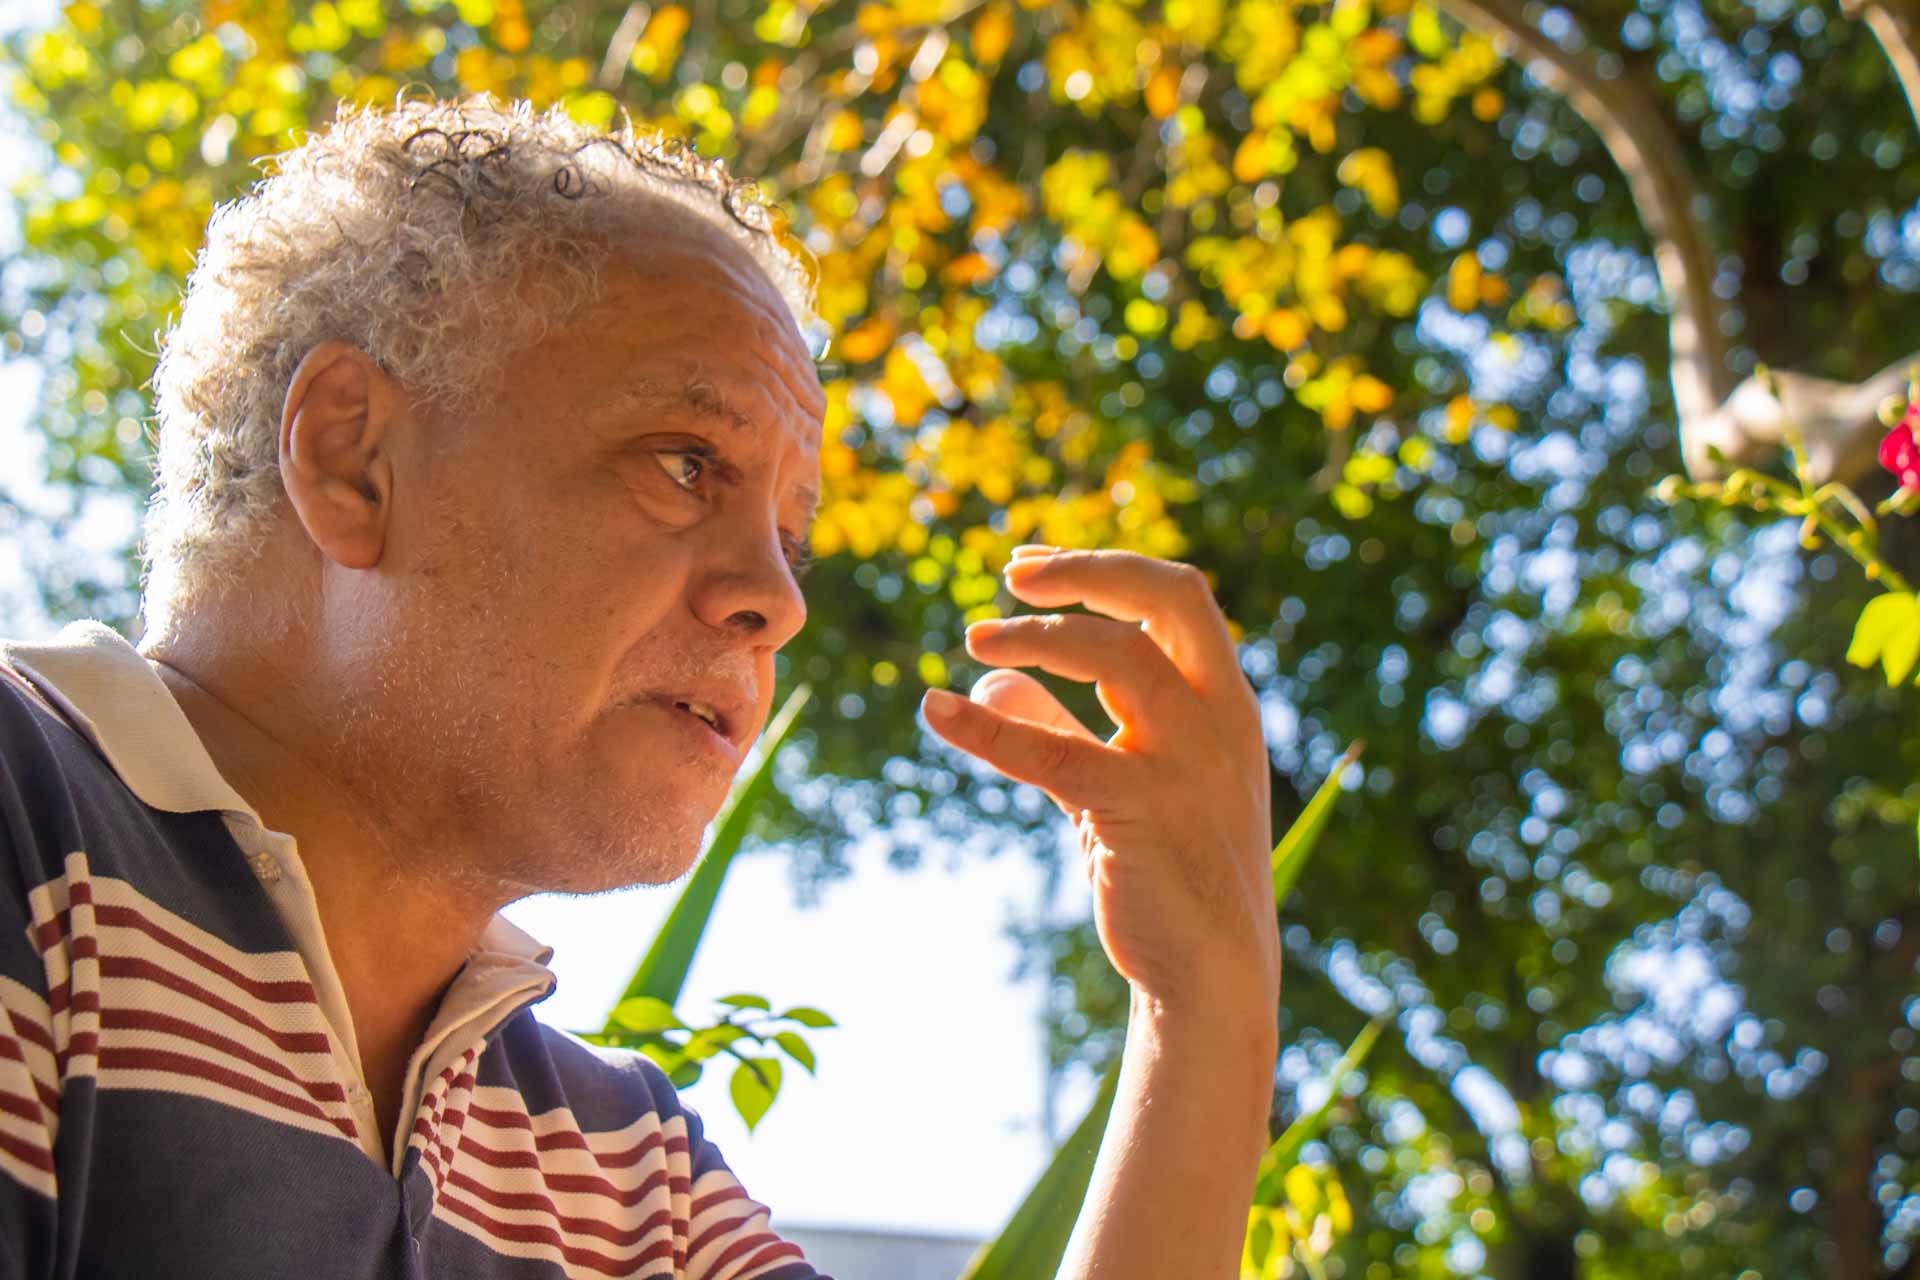 Fotografia de perfil de um senhor negro, de aproximadamente 60 anos. Ao fundo, há árvores com folhas amarelas.